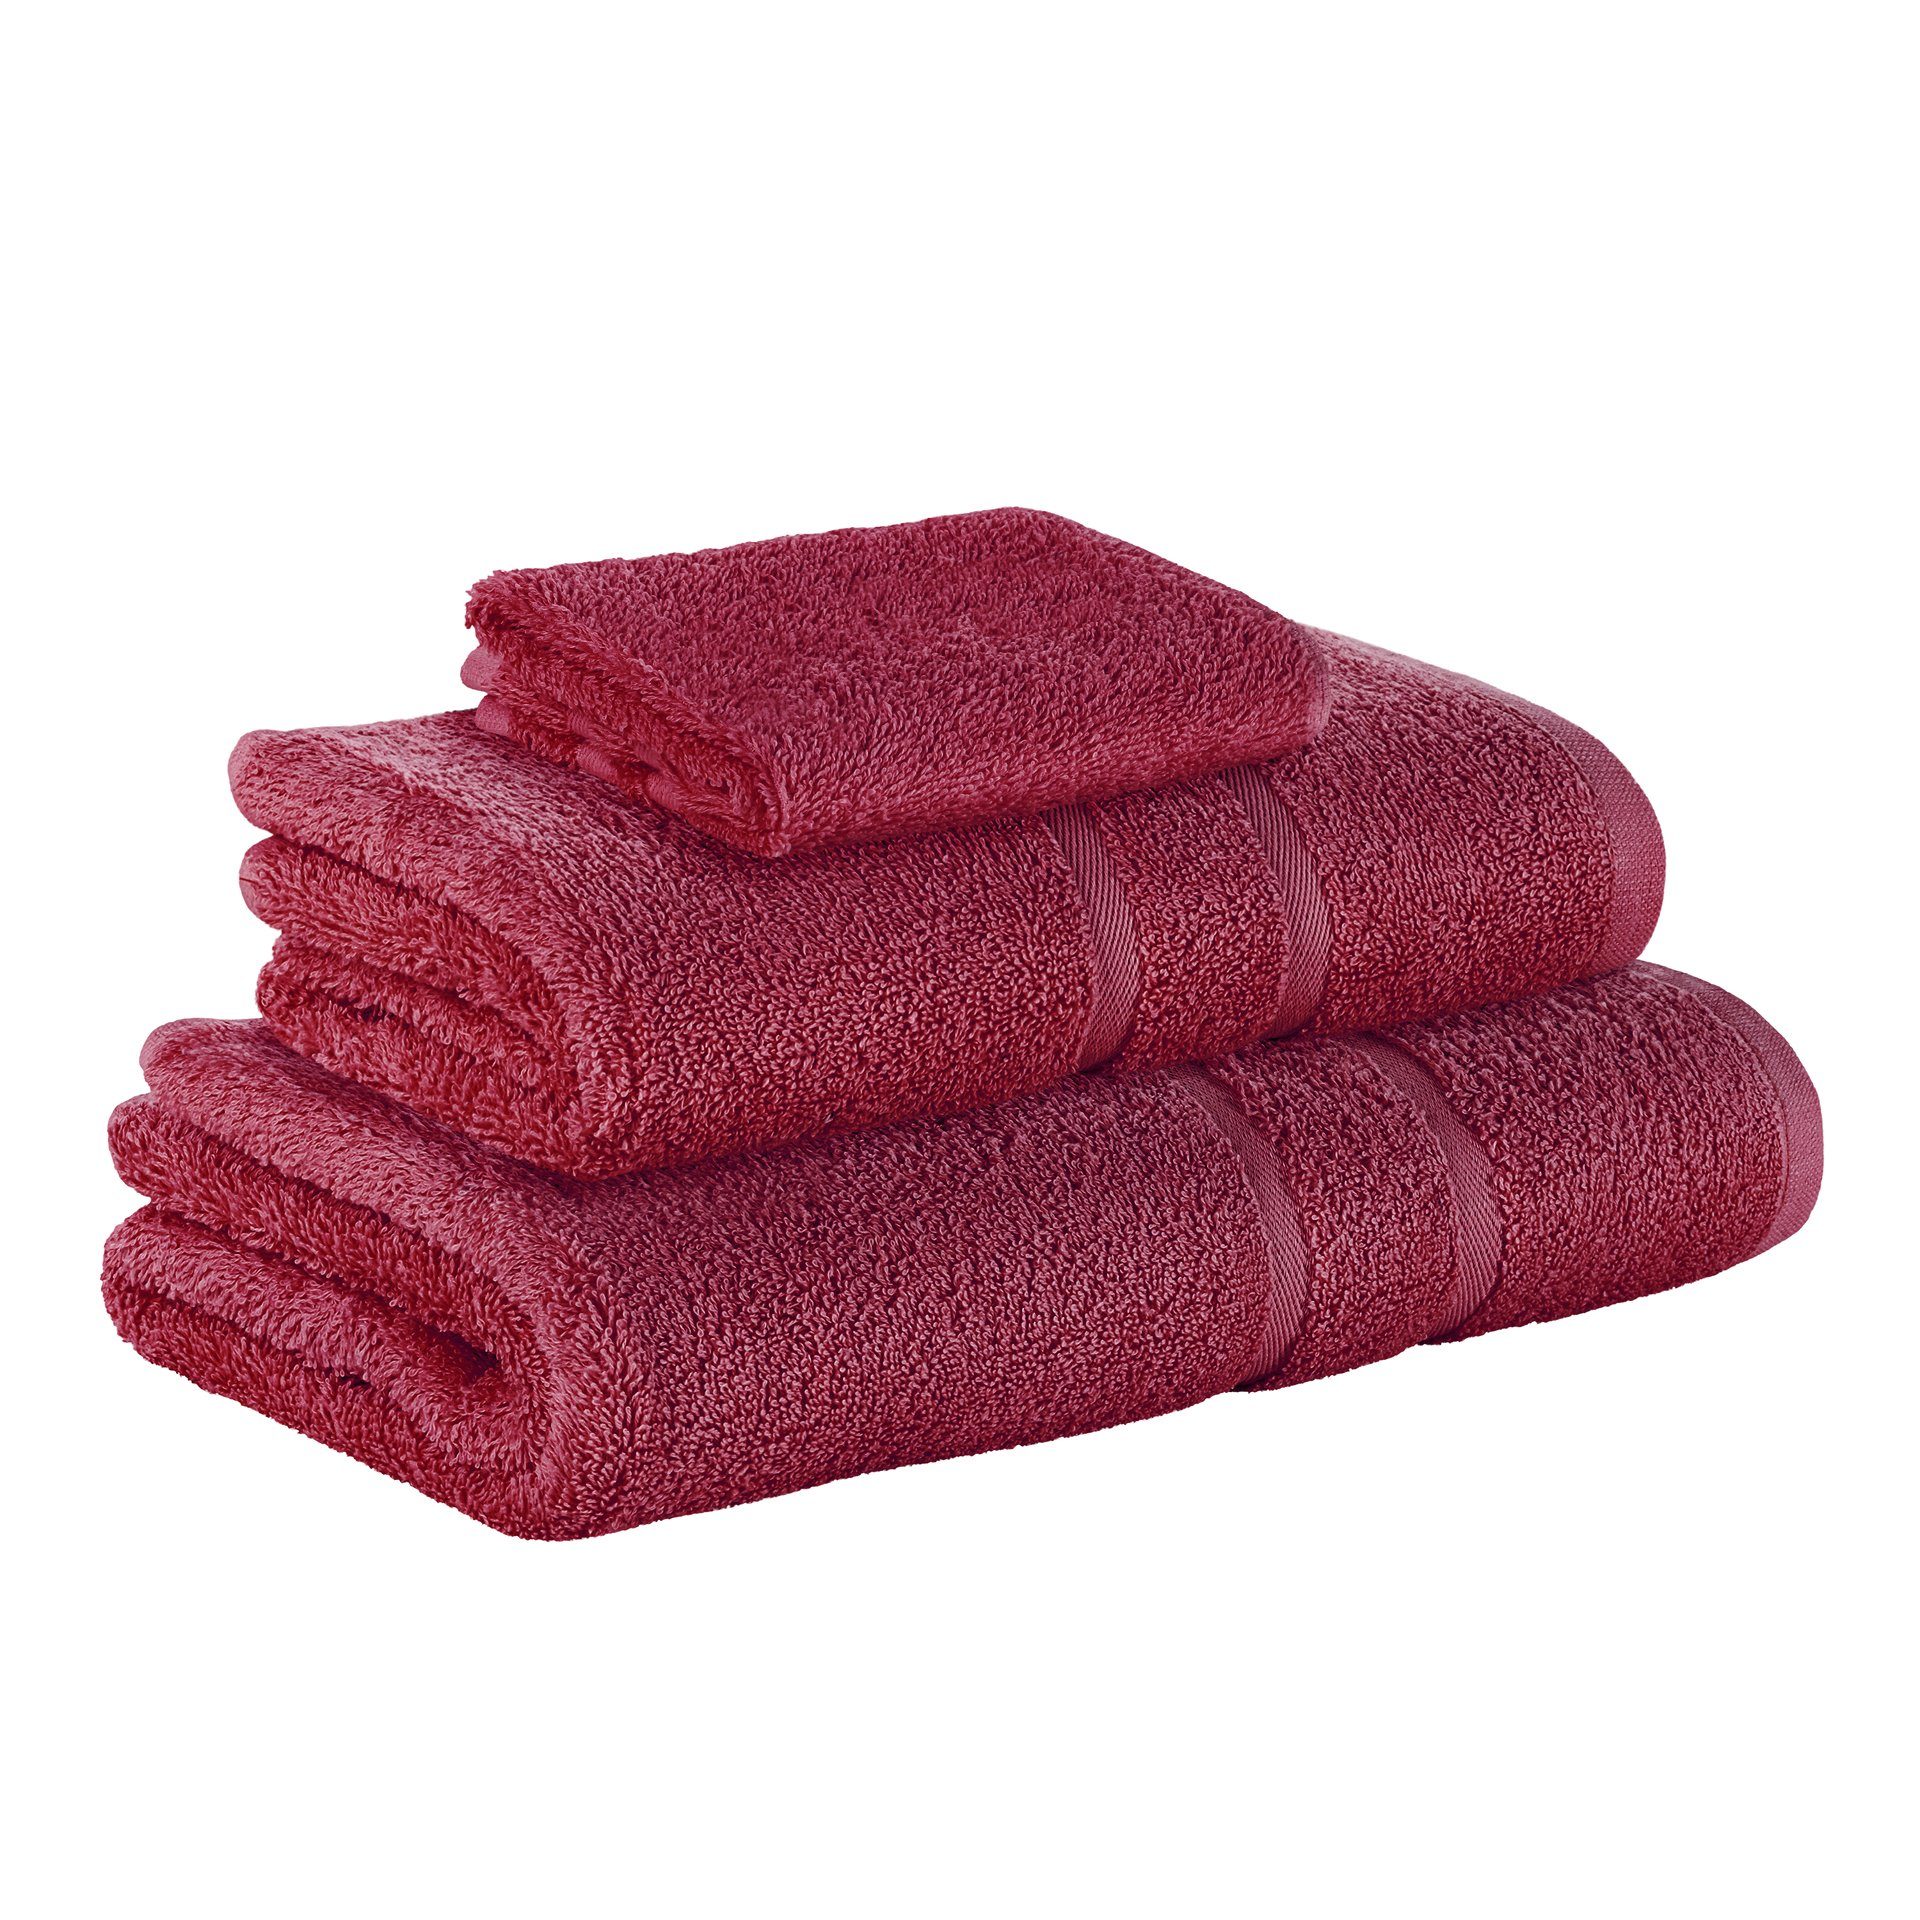 Heimtextilien Handtuch-Sets StickandShine Handtuch Set 1x Gästehandtuch 1x Handtuch 1x Duschtuch als SET in verschiedenen Farben